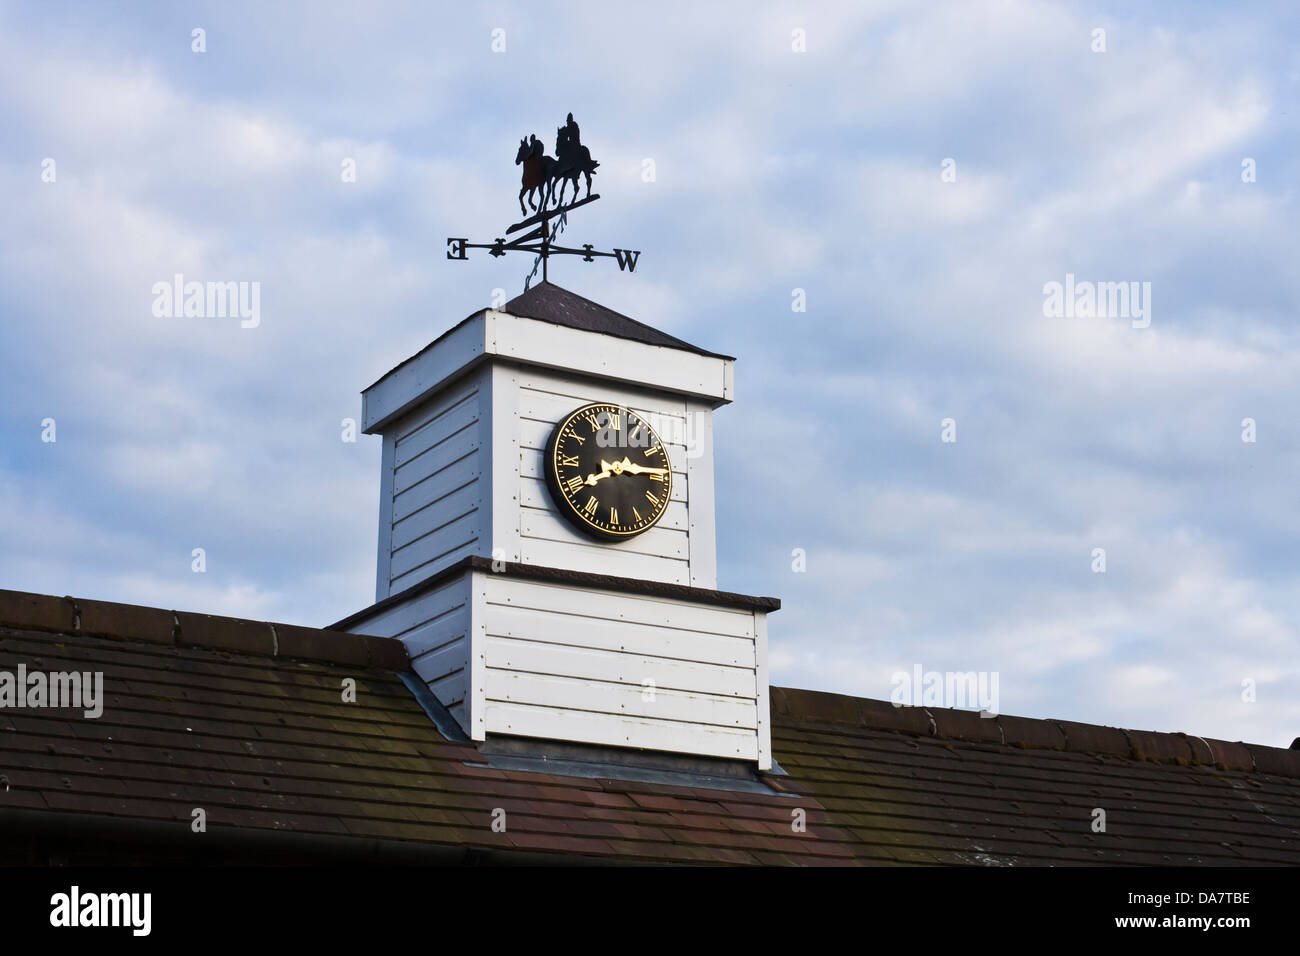 Una veleta con un caballo de carreras motif se asienta sobre una torre de reloj en el tejado de un edificio de un espárrago. Foto de stock